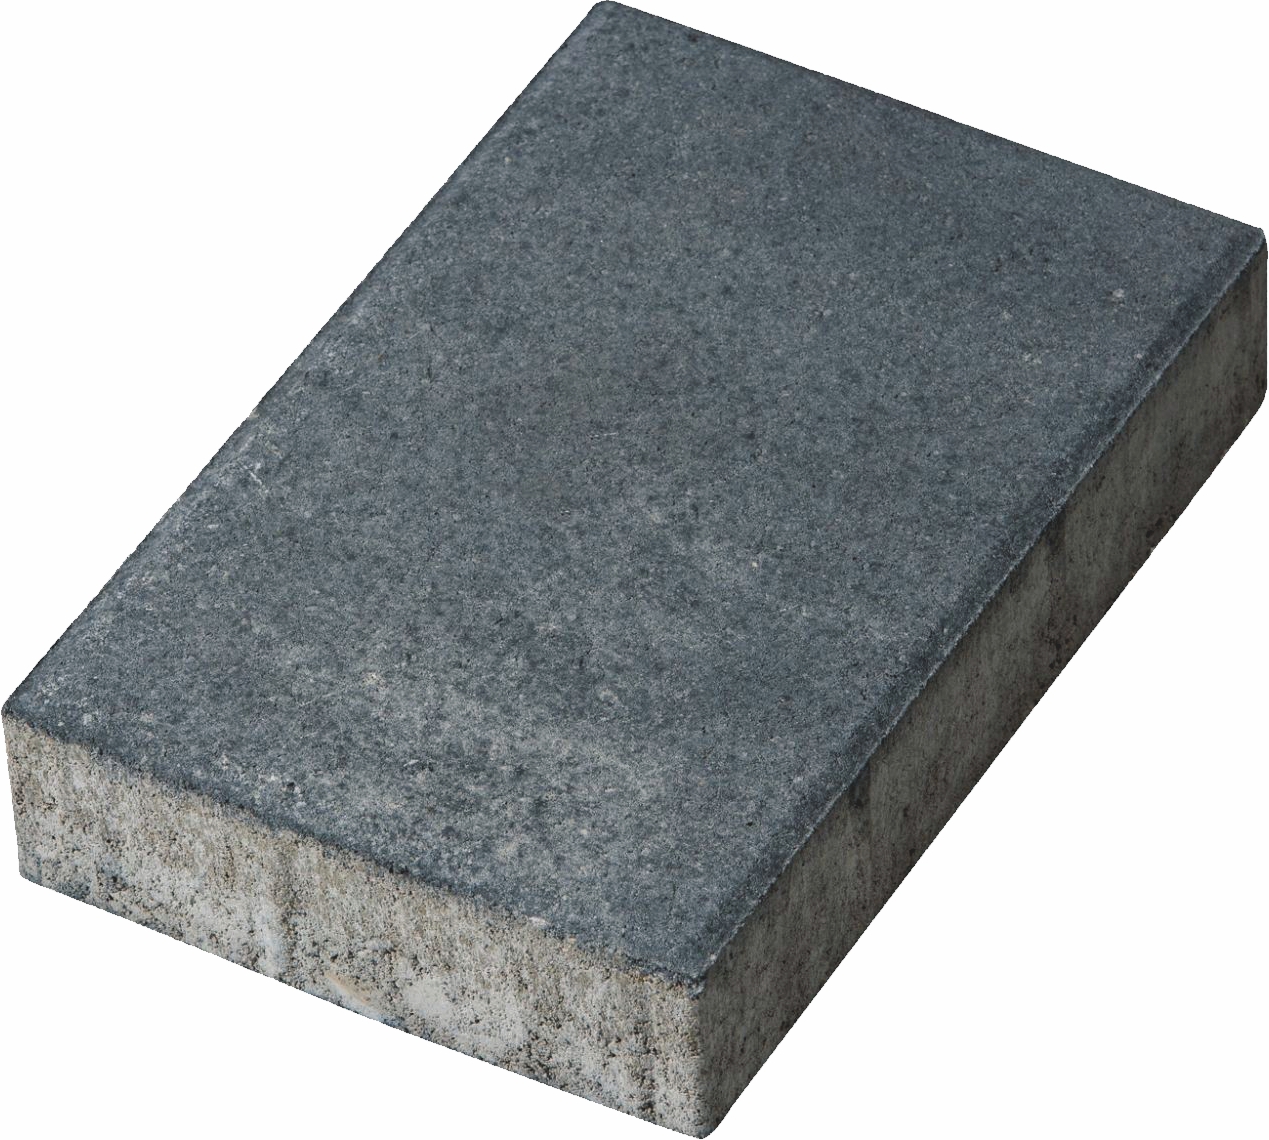 Pavele vibropresate din beton format 20 x 30 cm grosime 6 cm ELIS D4 culoare antracit